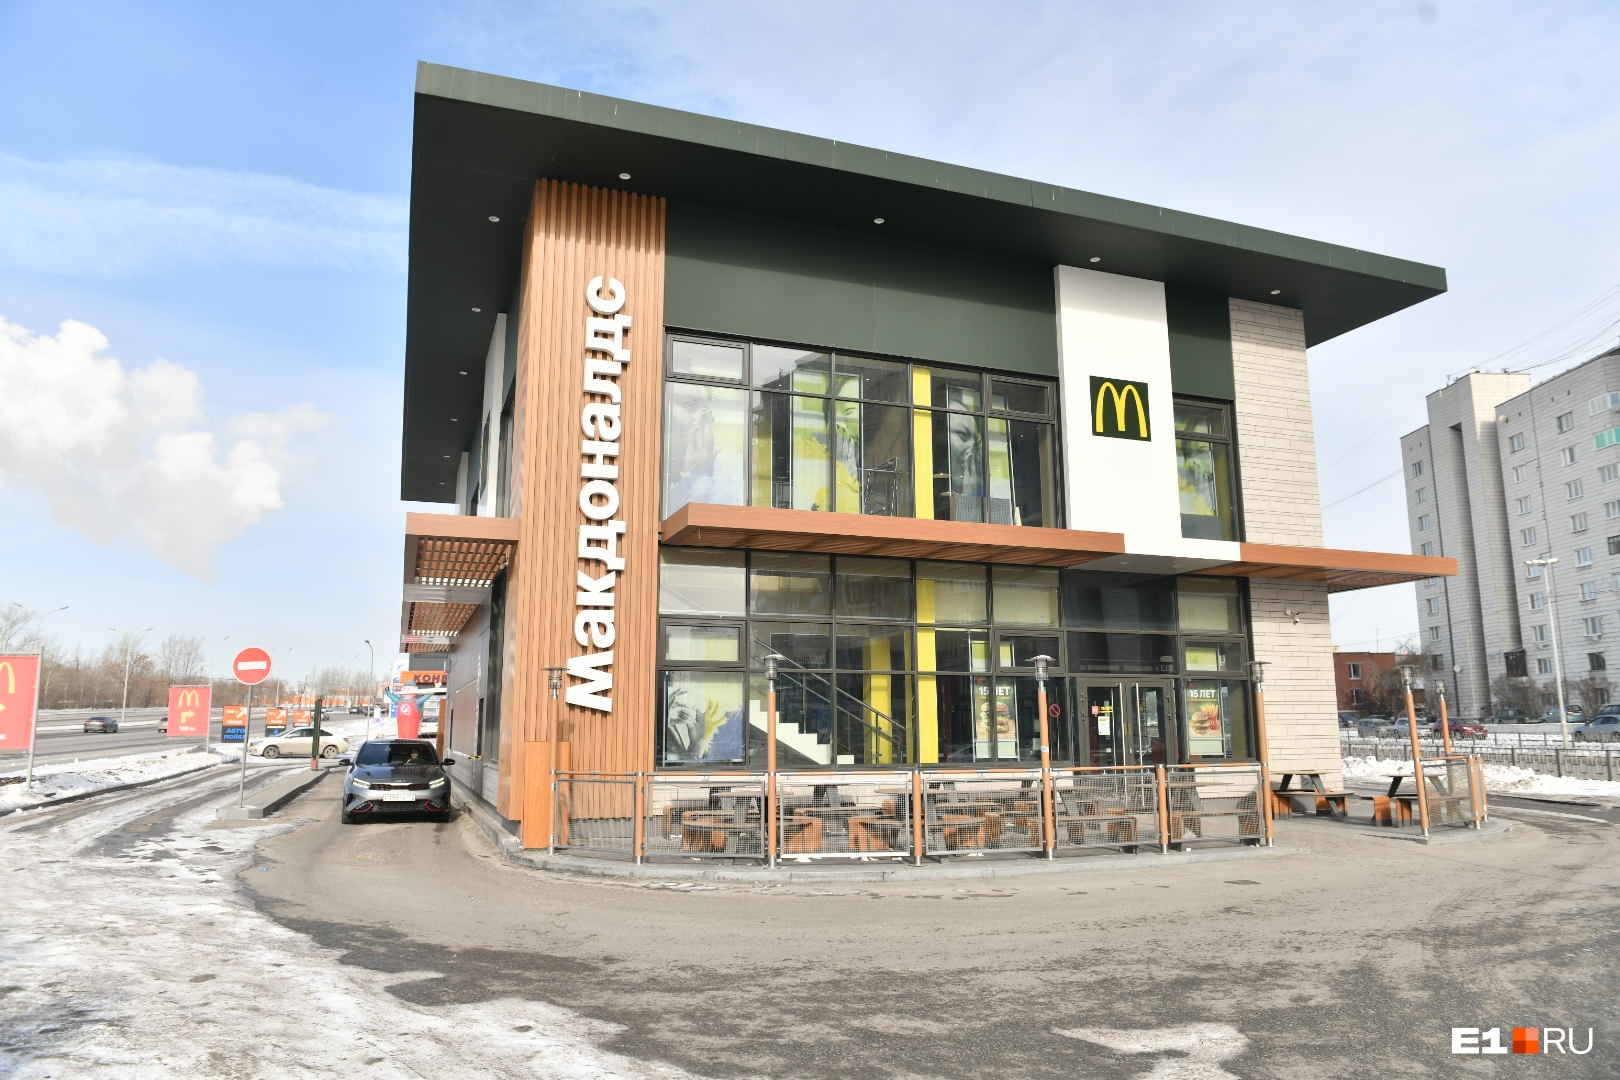 Как ни в чем не бывало: показываем, как работают рестораны McDonald’s в Екатеринбурге